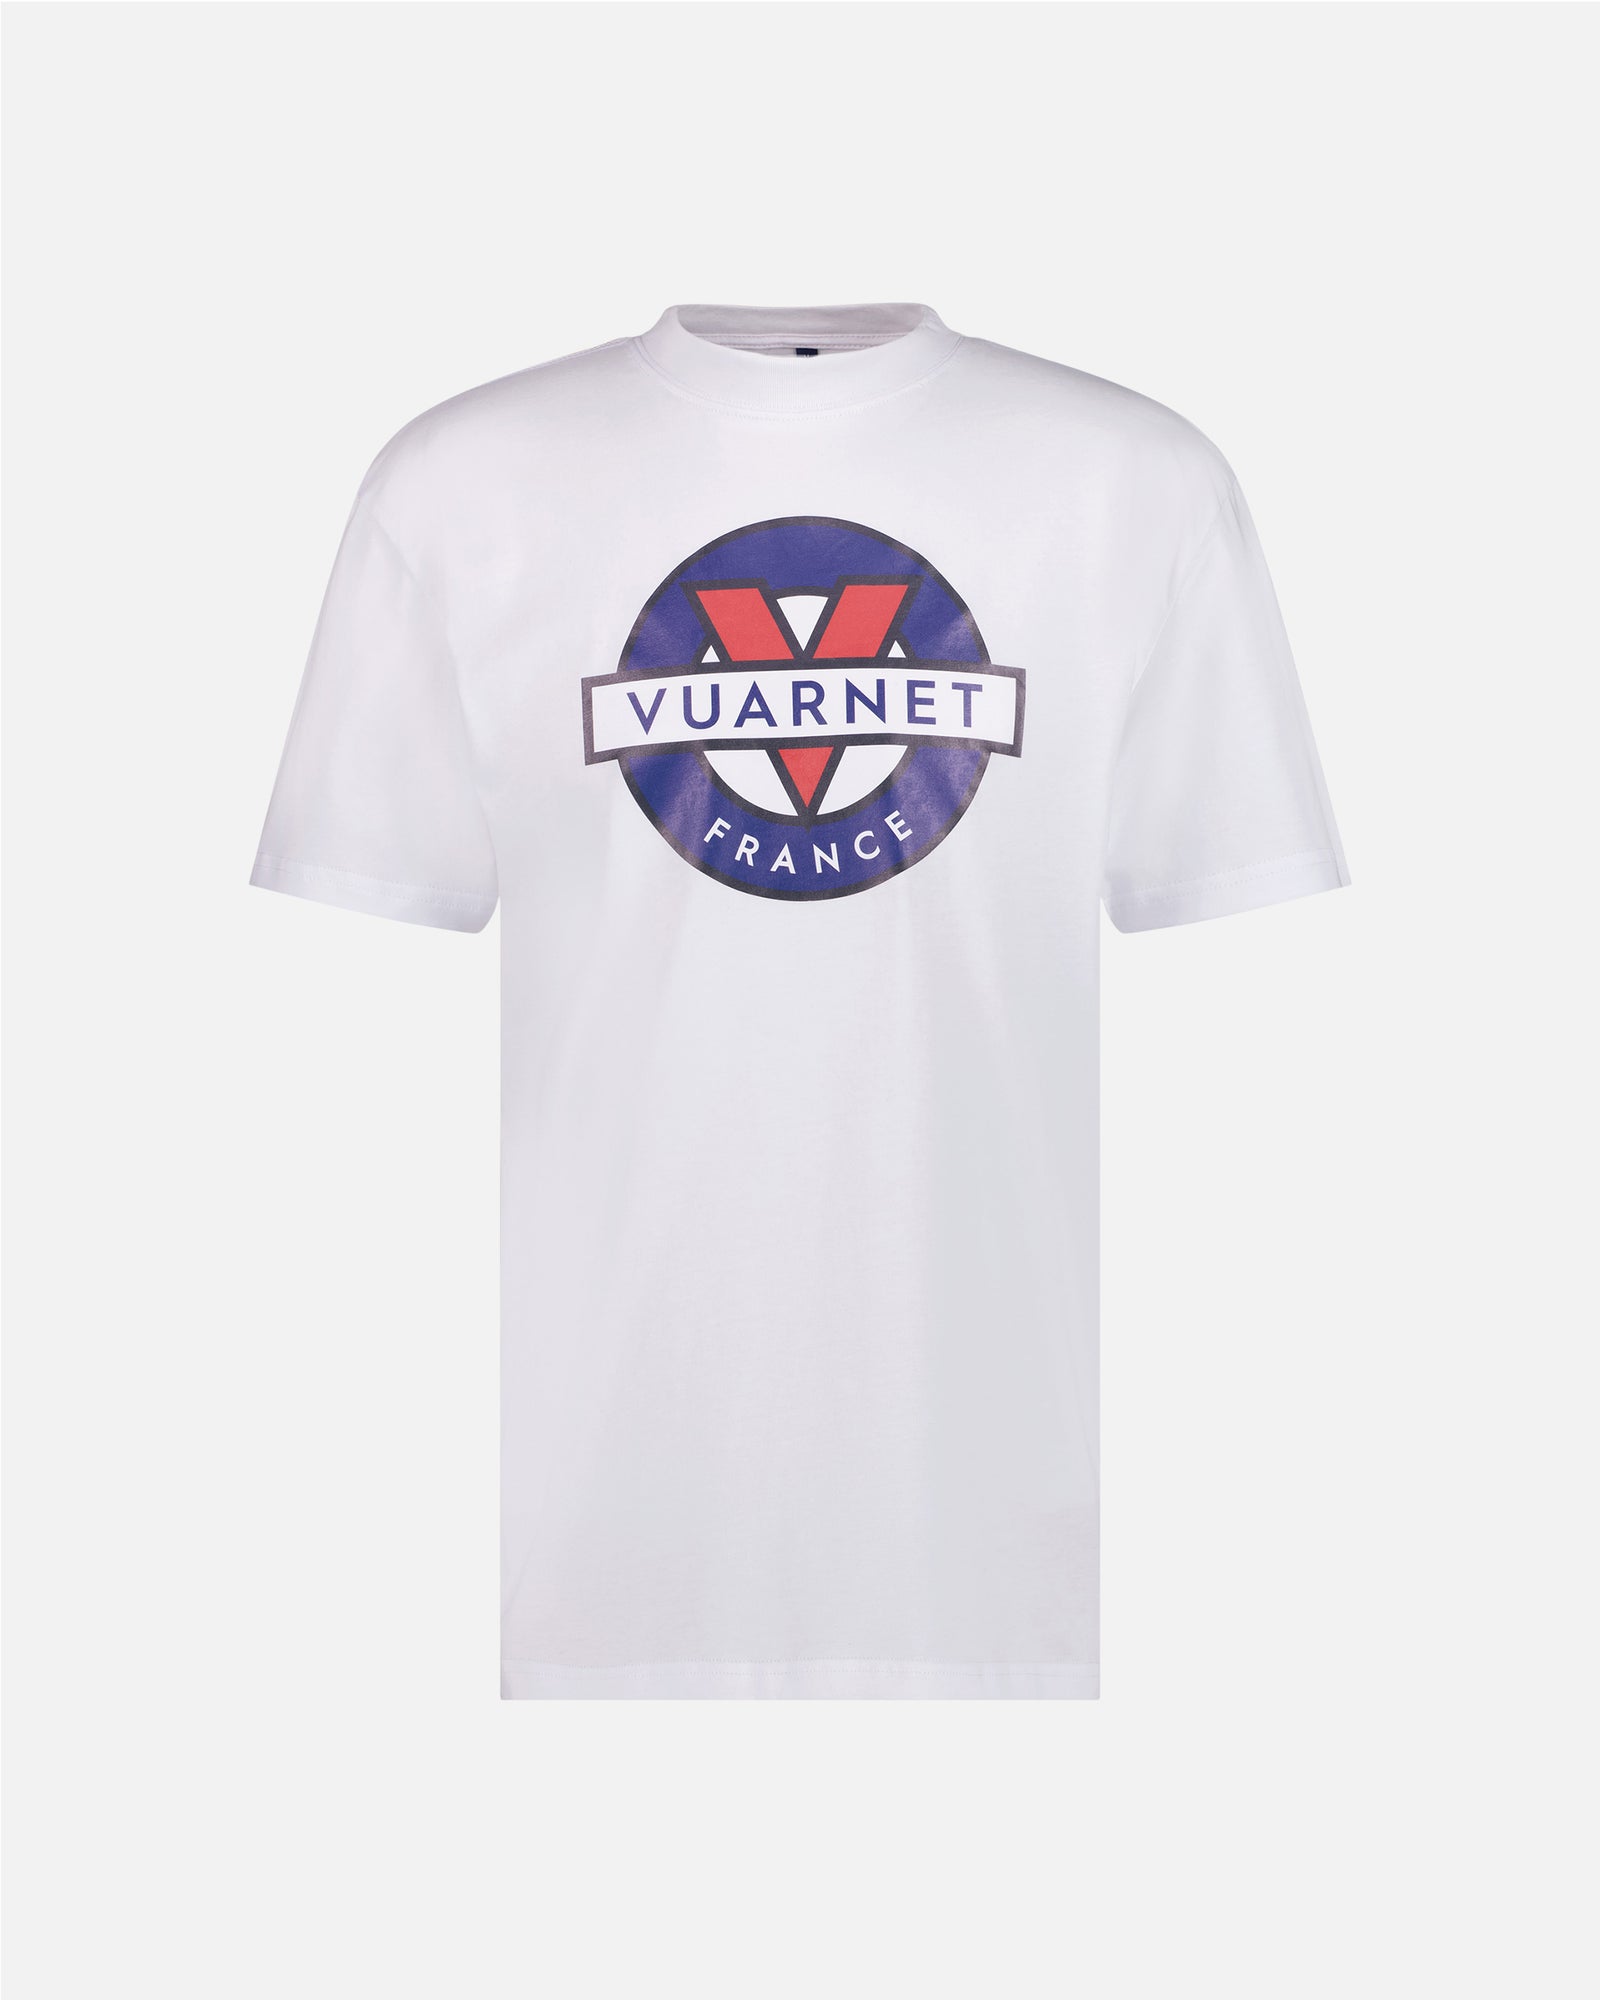 Vuarnet Logo T-shirt - Final Sale